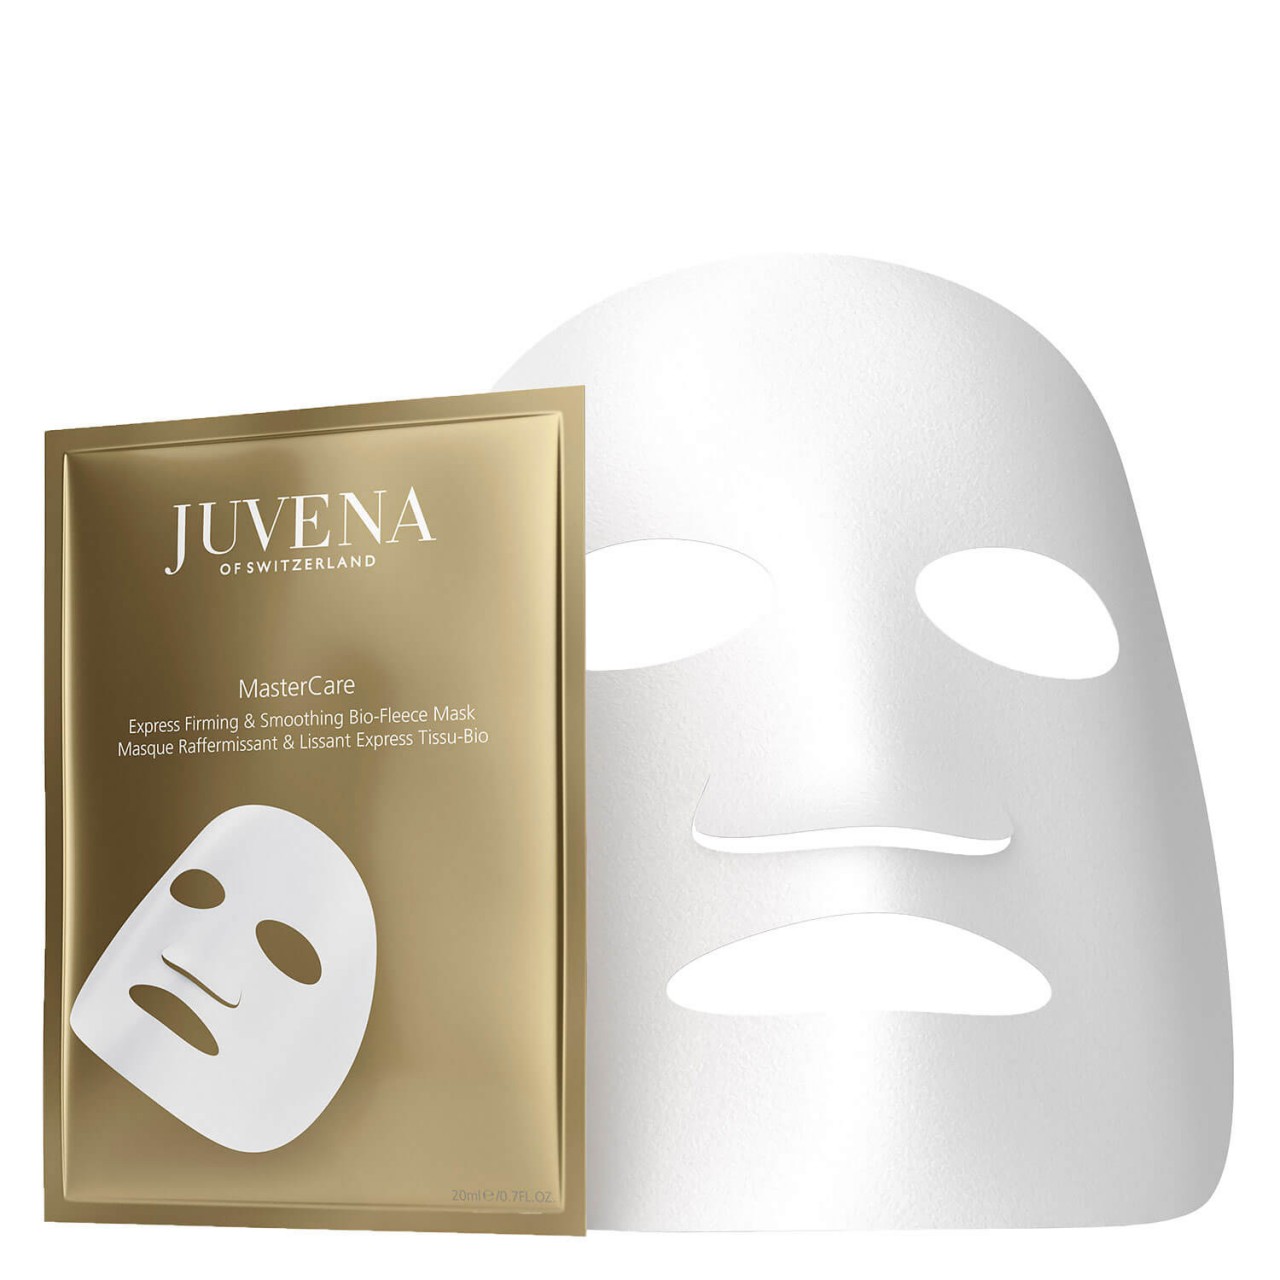 MasterCare - Express Firming & Smoothing Bio-Fleece Mask von JUVENA